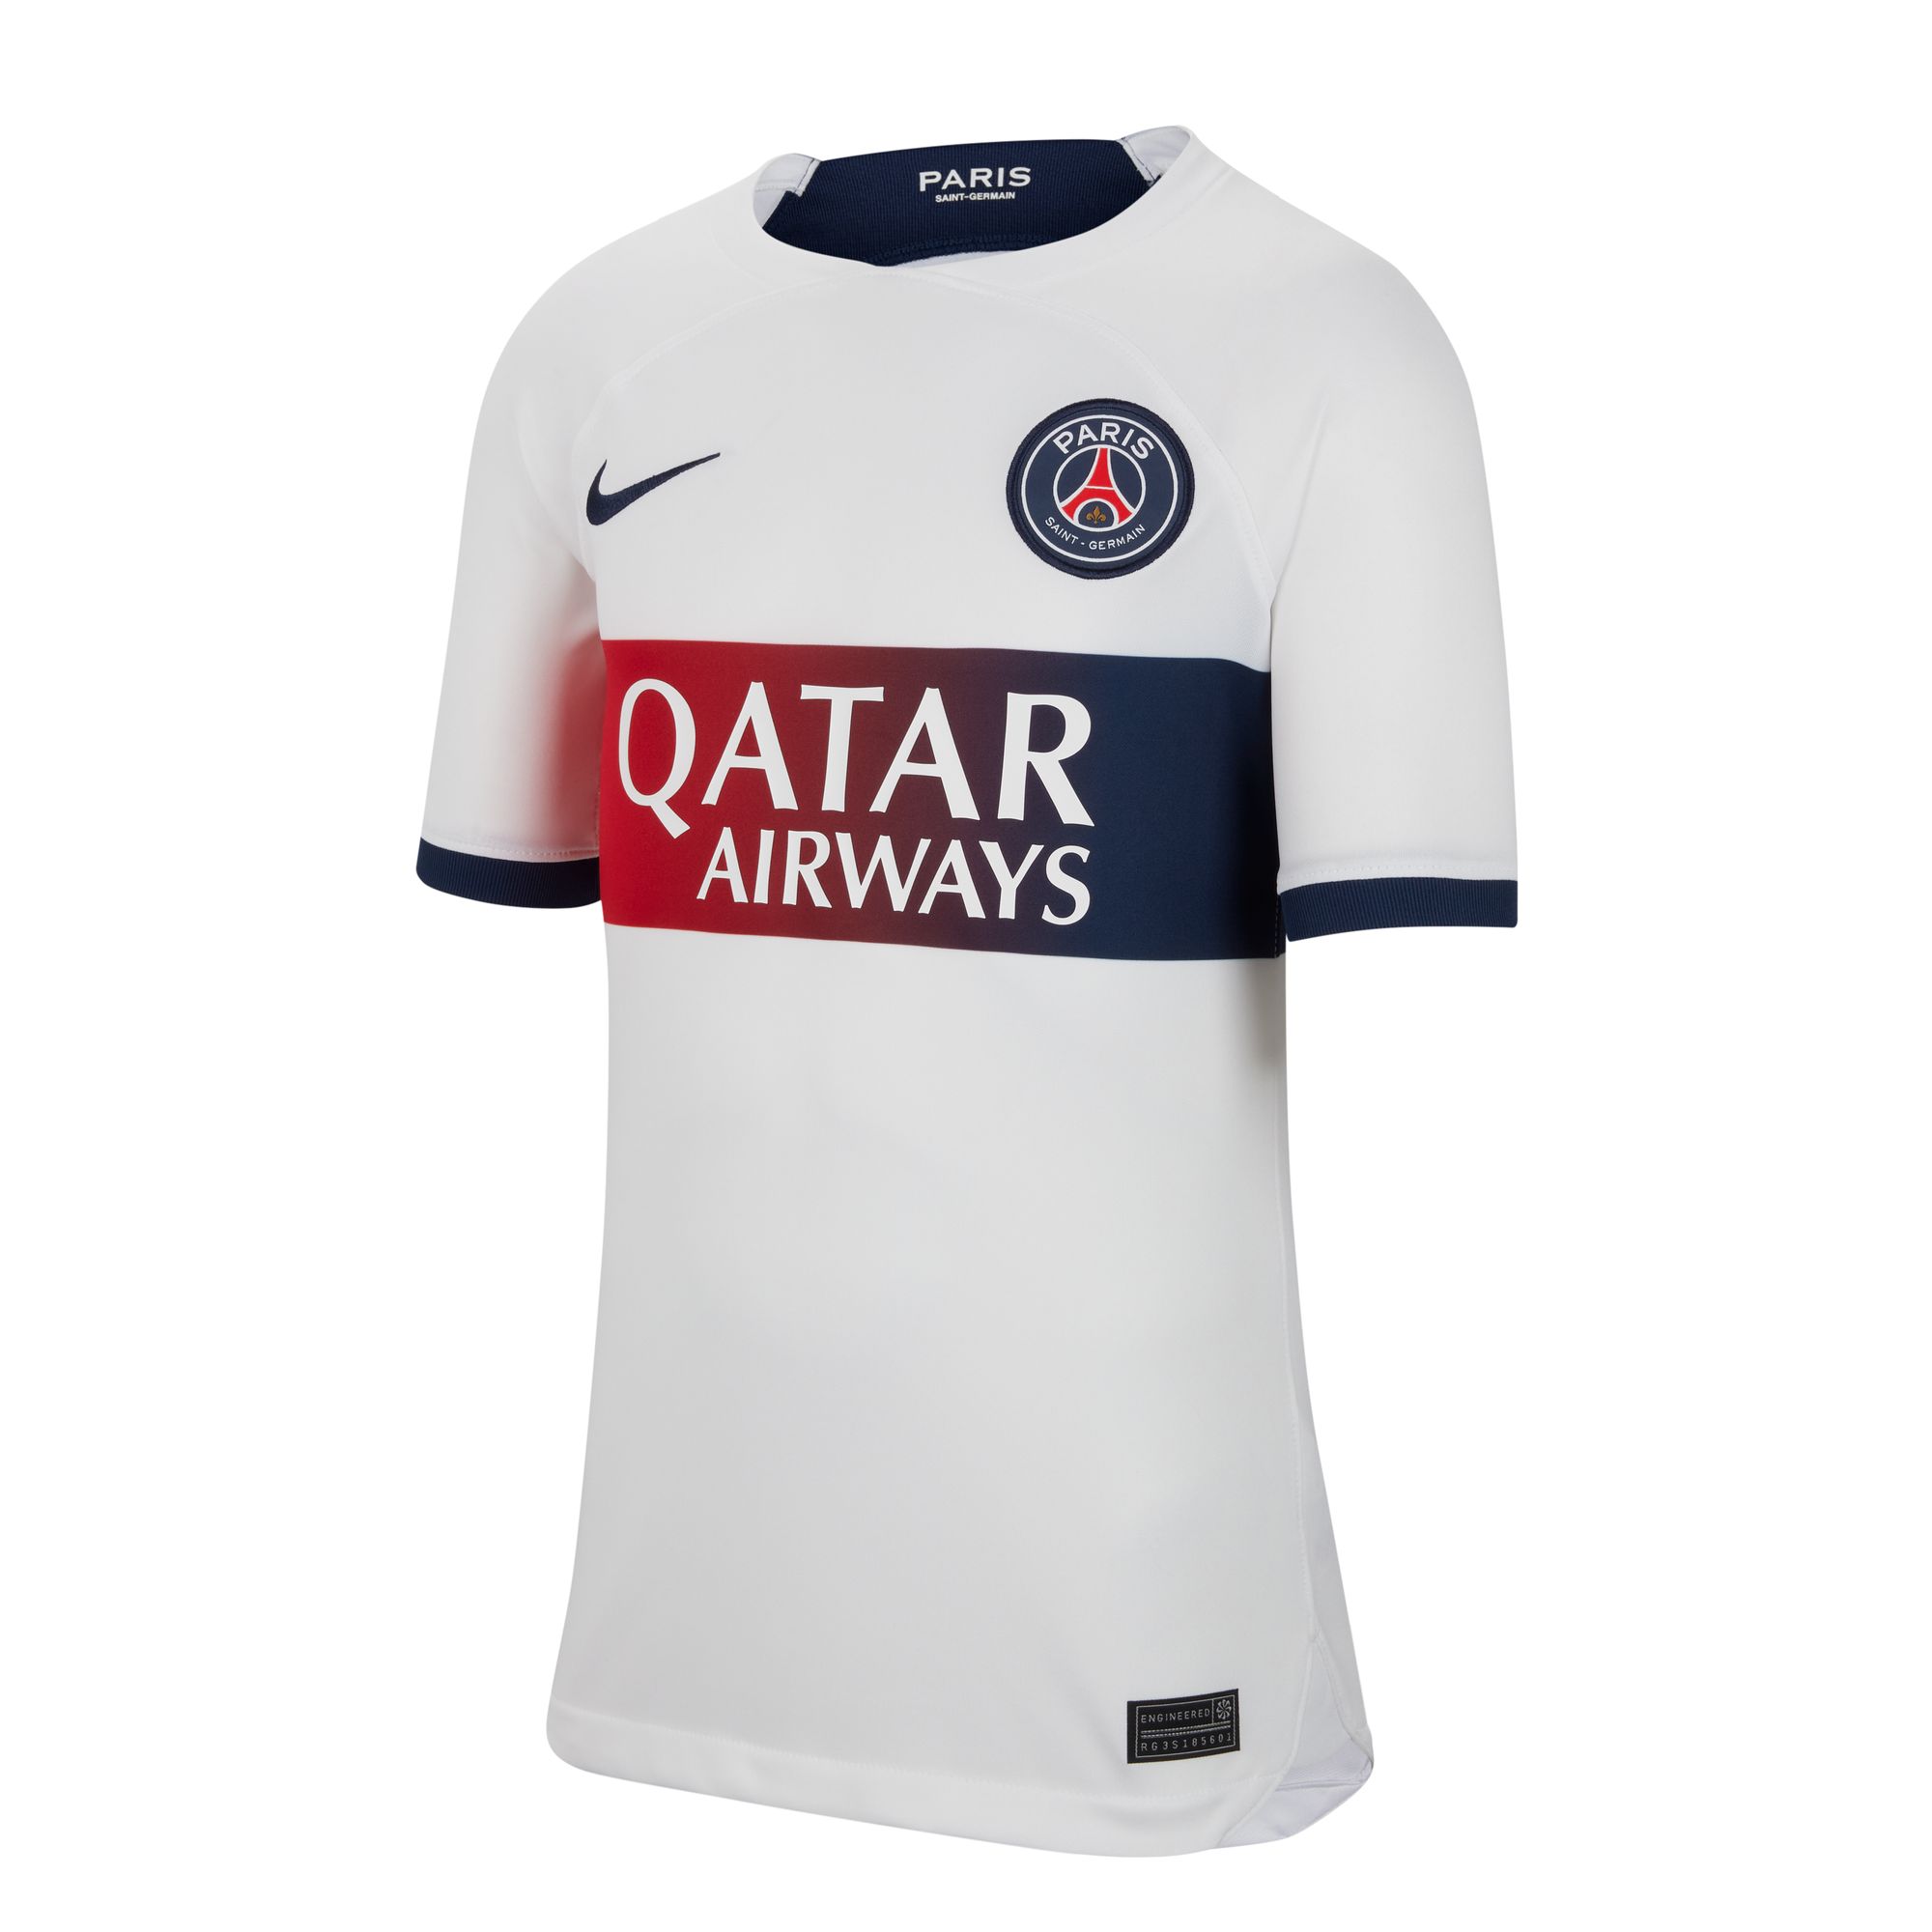 Paris Saint-Germain Black International Club Soccer Fan Jerseys for sale